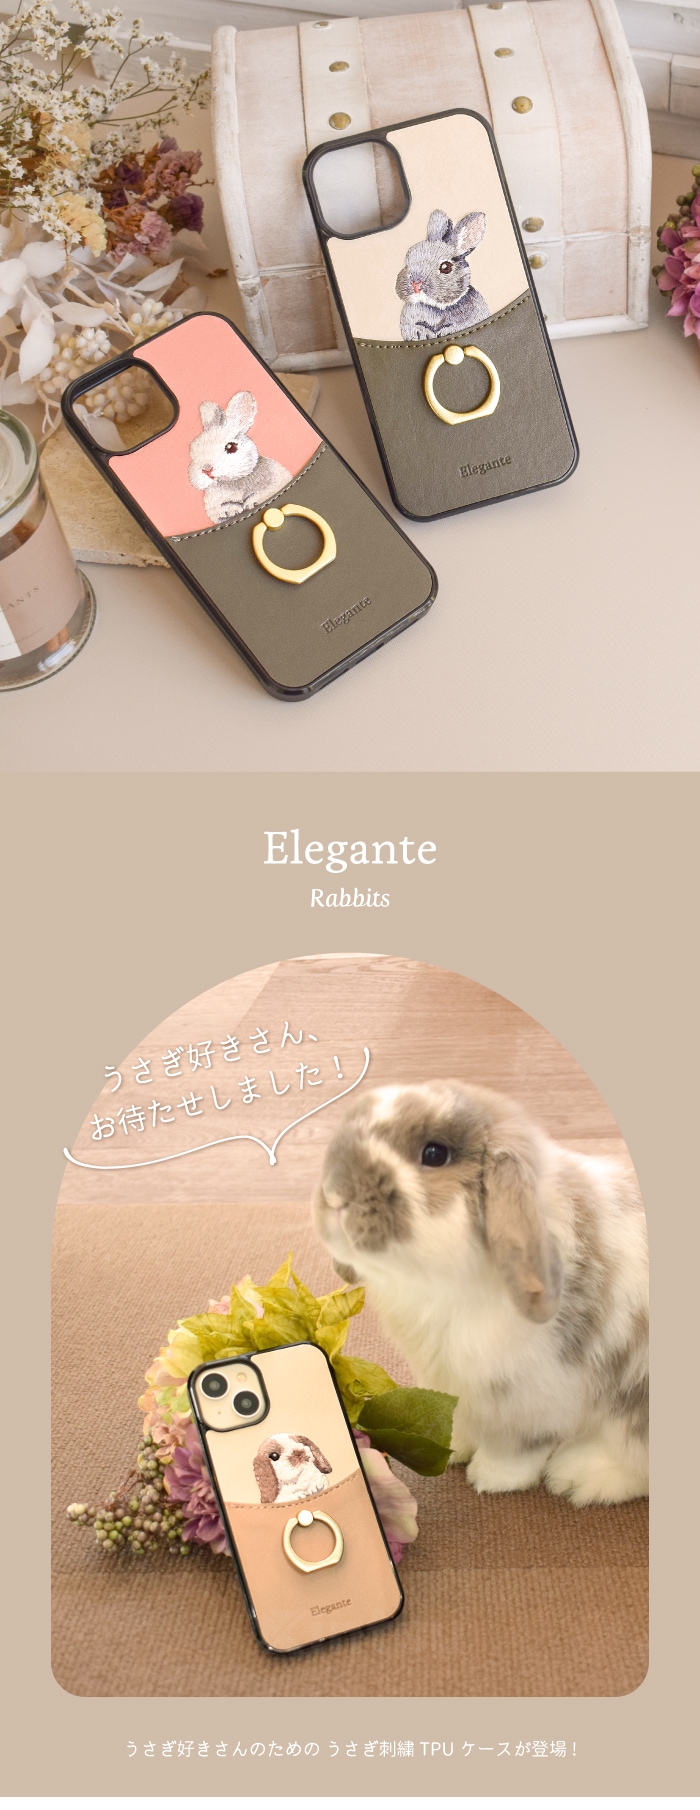 エレガンテ・うさぎ刺繍 ハードケース iPhoneシリーズ対応 【まるで本物みたいなもふもふ感】-Elegante(エレガンテ) Official  Online Store